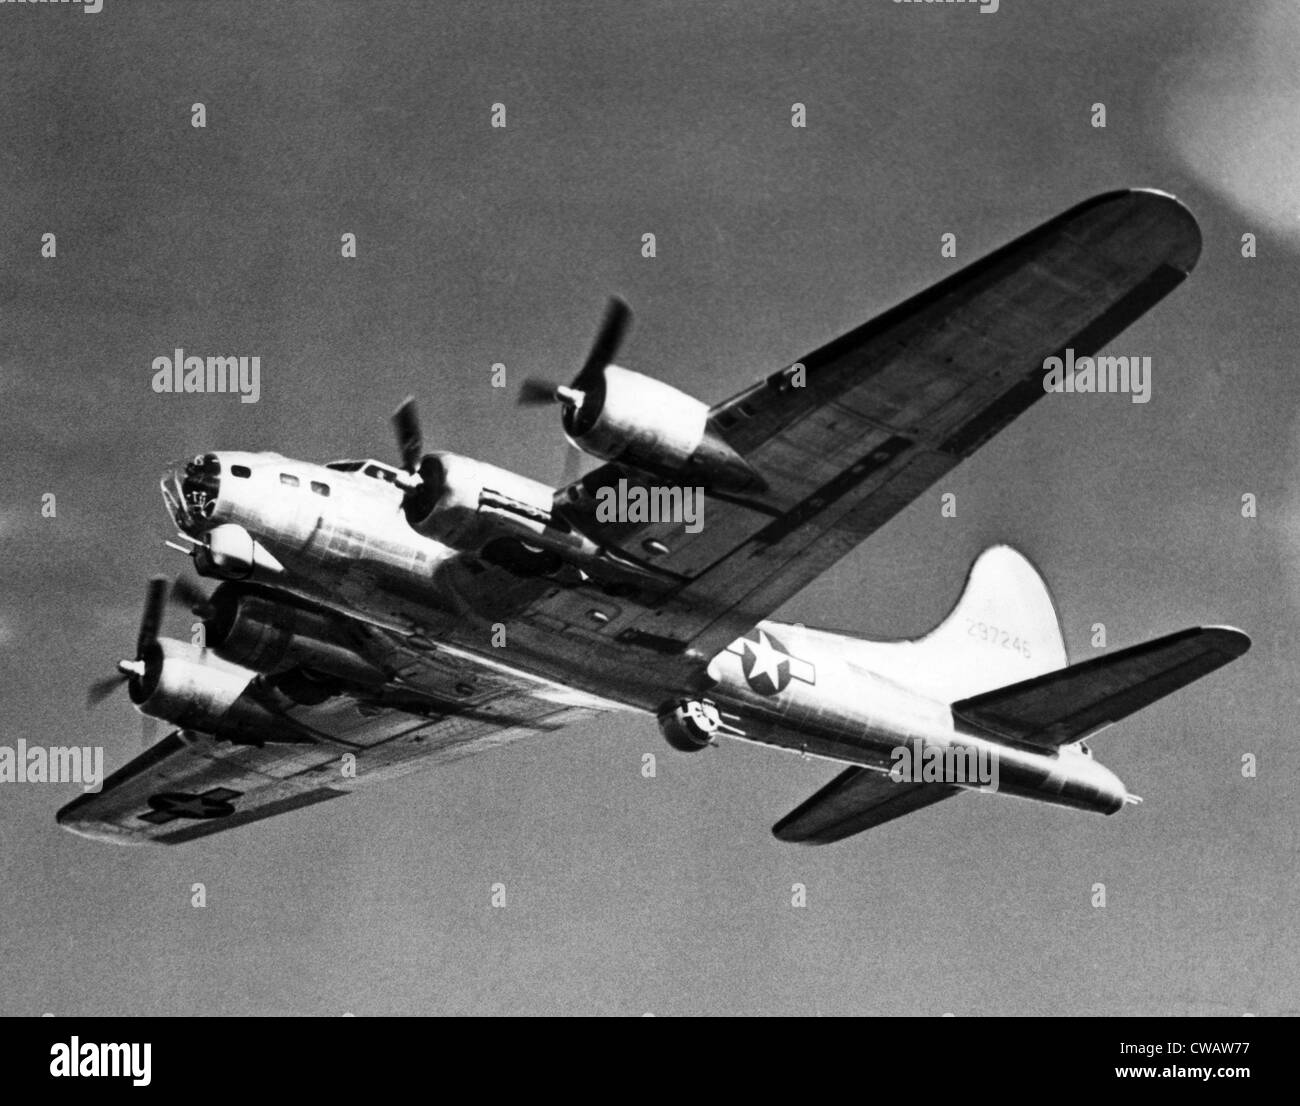 Boeing B-17 Flying Fortress, utilizzate contro i tedeschi durante la II Guerra Mondiale, marzo 1944. La cortesia: Archivi CSU/Everett Collection Foto Stock